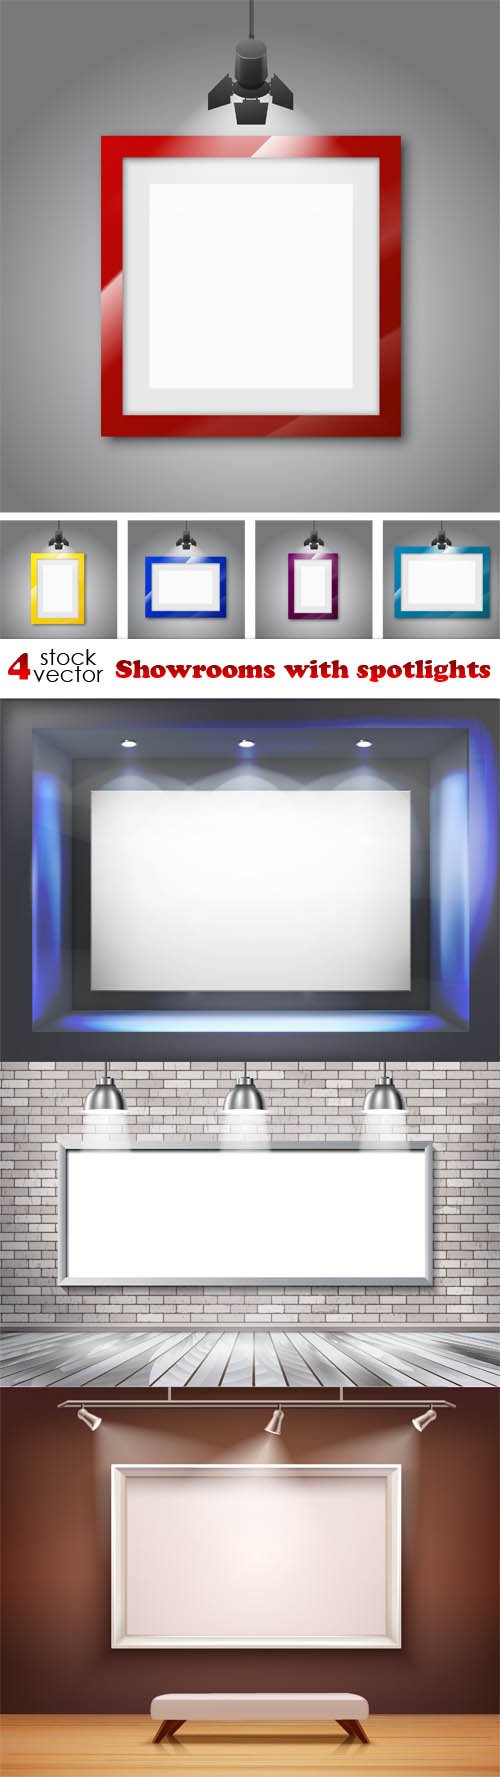 Vectors - Showrooms with spotlights